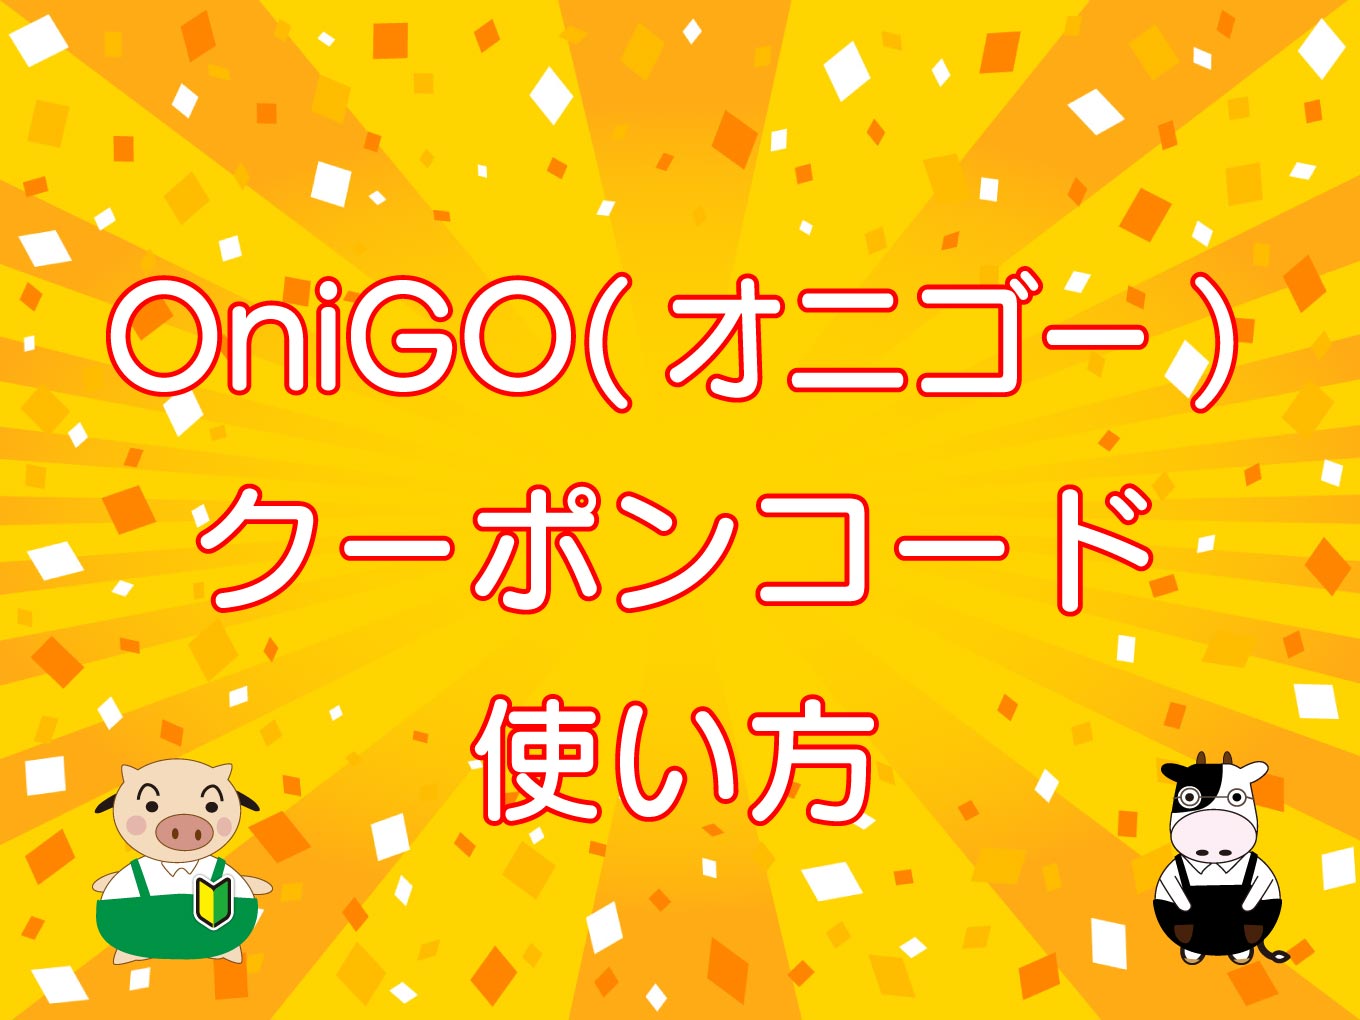 OniGO（オニゴー）クーポンコード情報と使い方のキャッチ画像